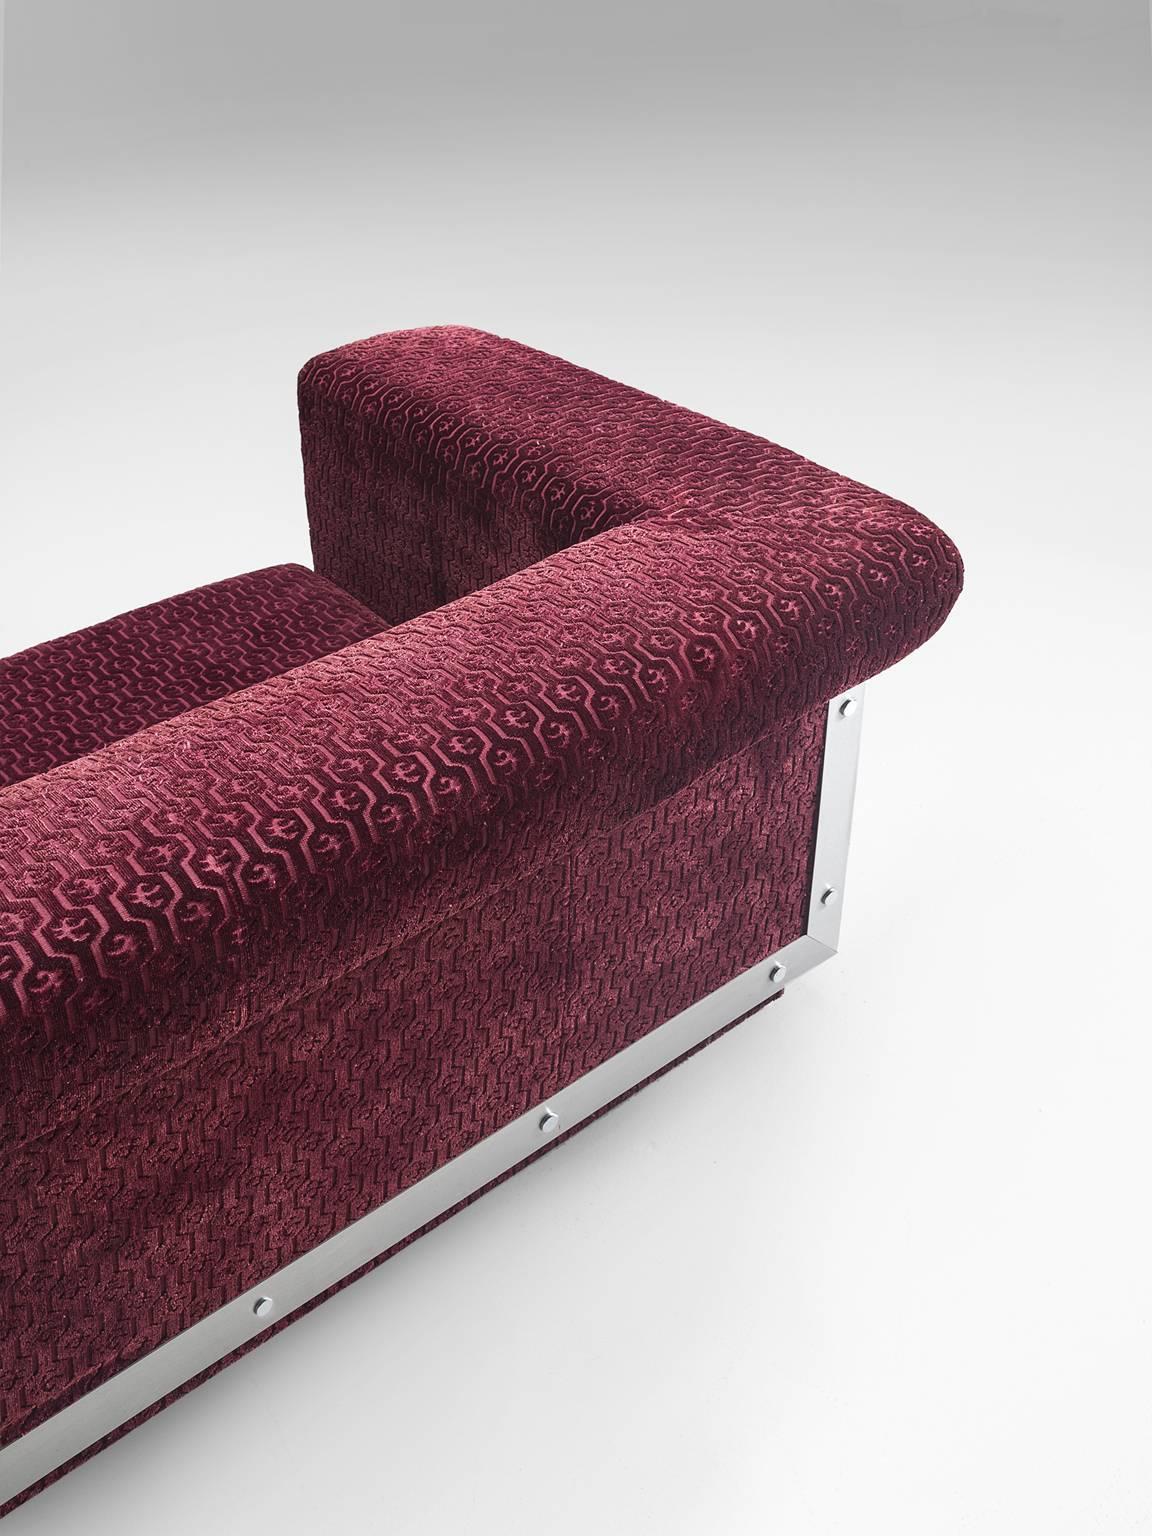 French Sofa in Stainless Steel and Burgundy Velvet Upholstery 5